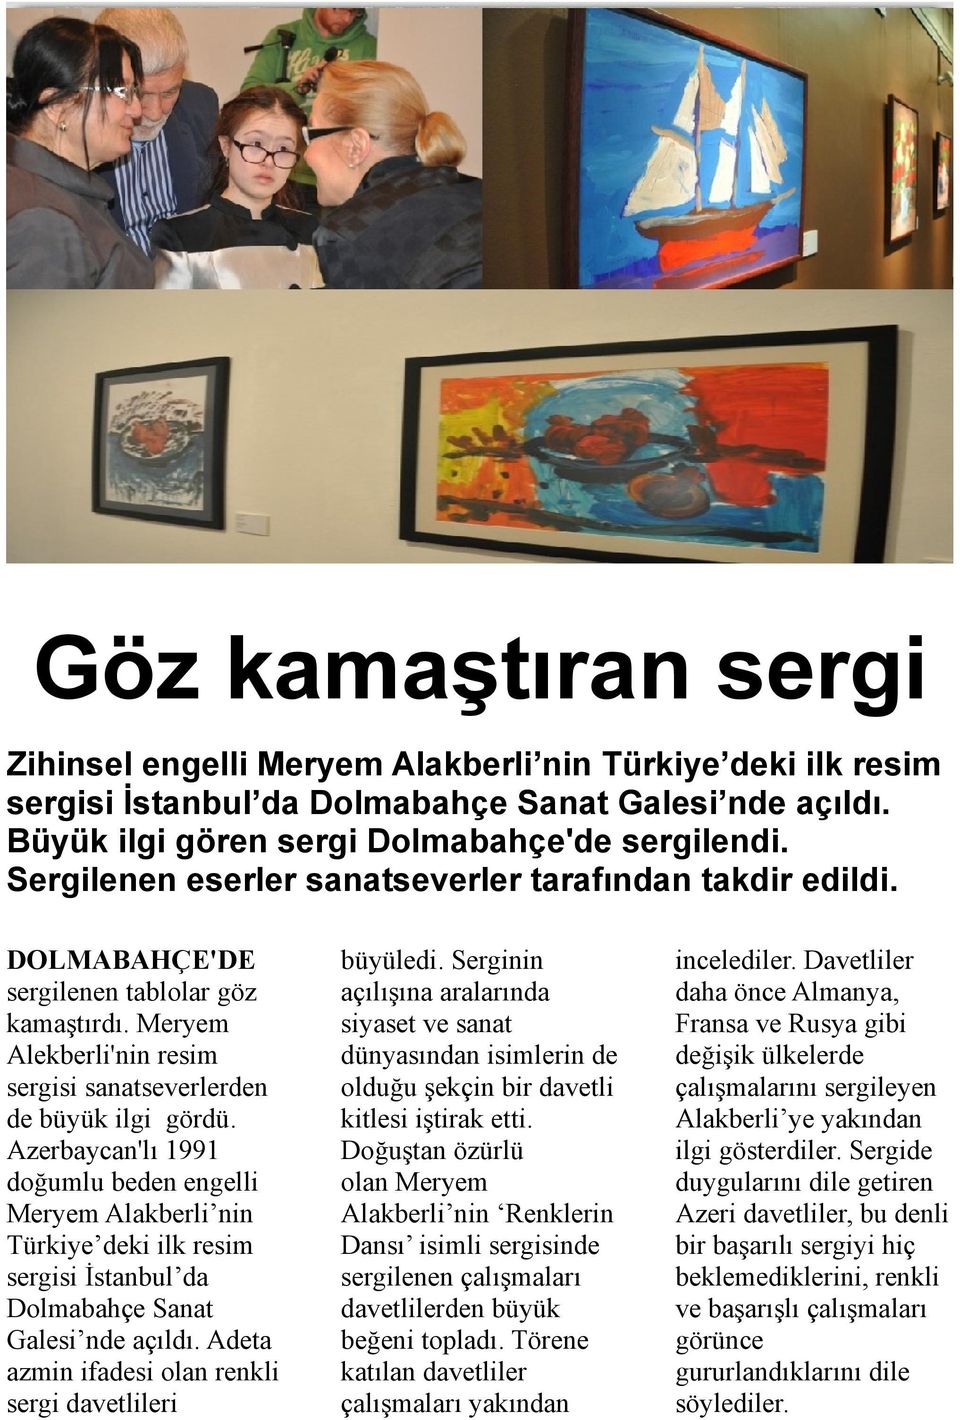 Azerbaycan'lı 1991 doğumlu beden engelli Meryem Alakberli nin Türkiye deki ilk resim sergisi İstanbul da Dolmabahçe Sanat Galesi nde açıldı. Adeta azmin ifadesi olan renkli sergi davetlileri büyüledi.